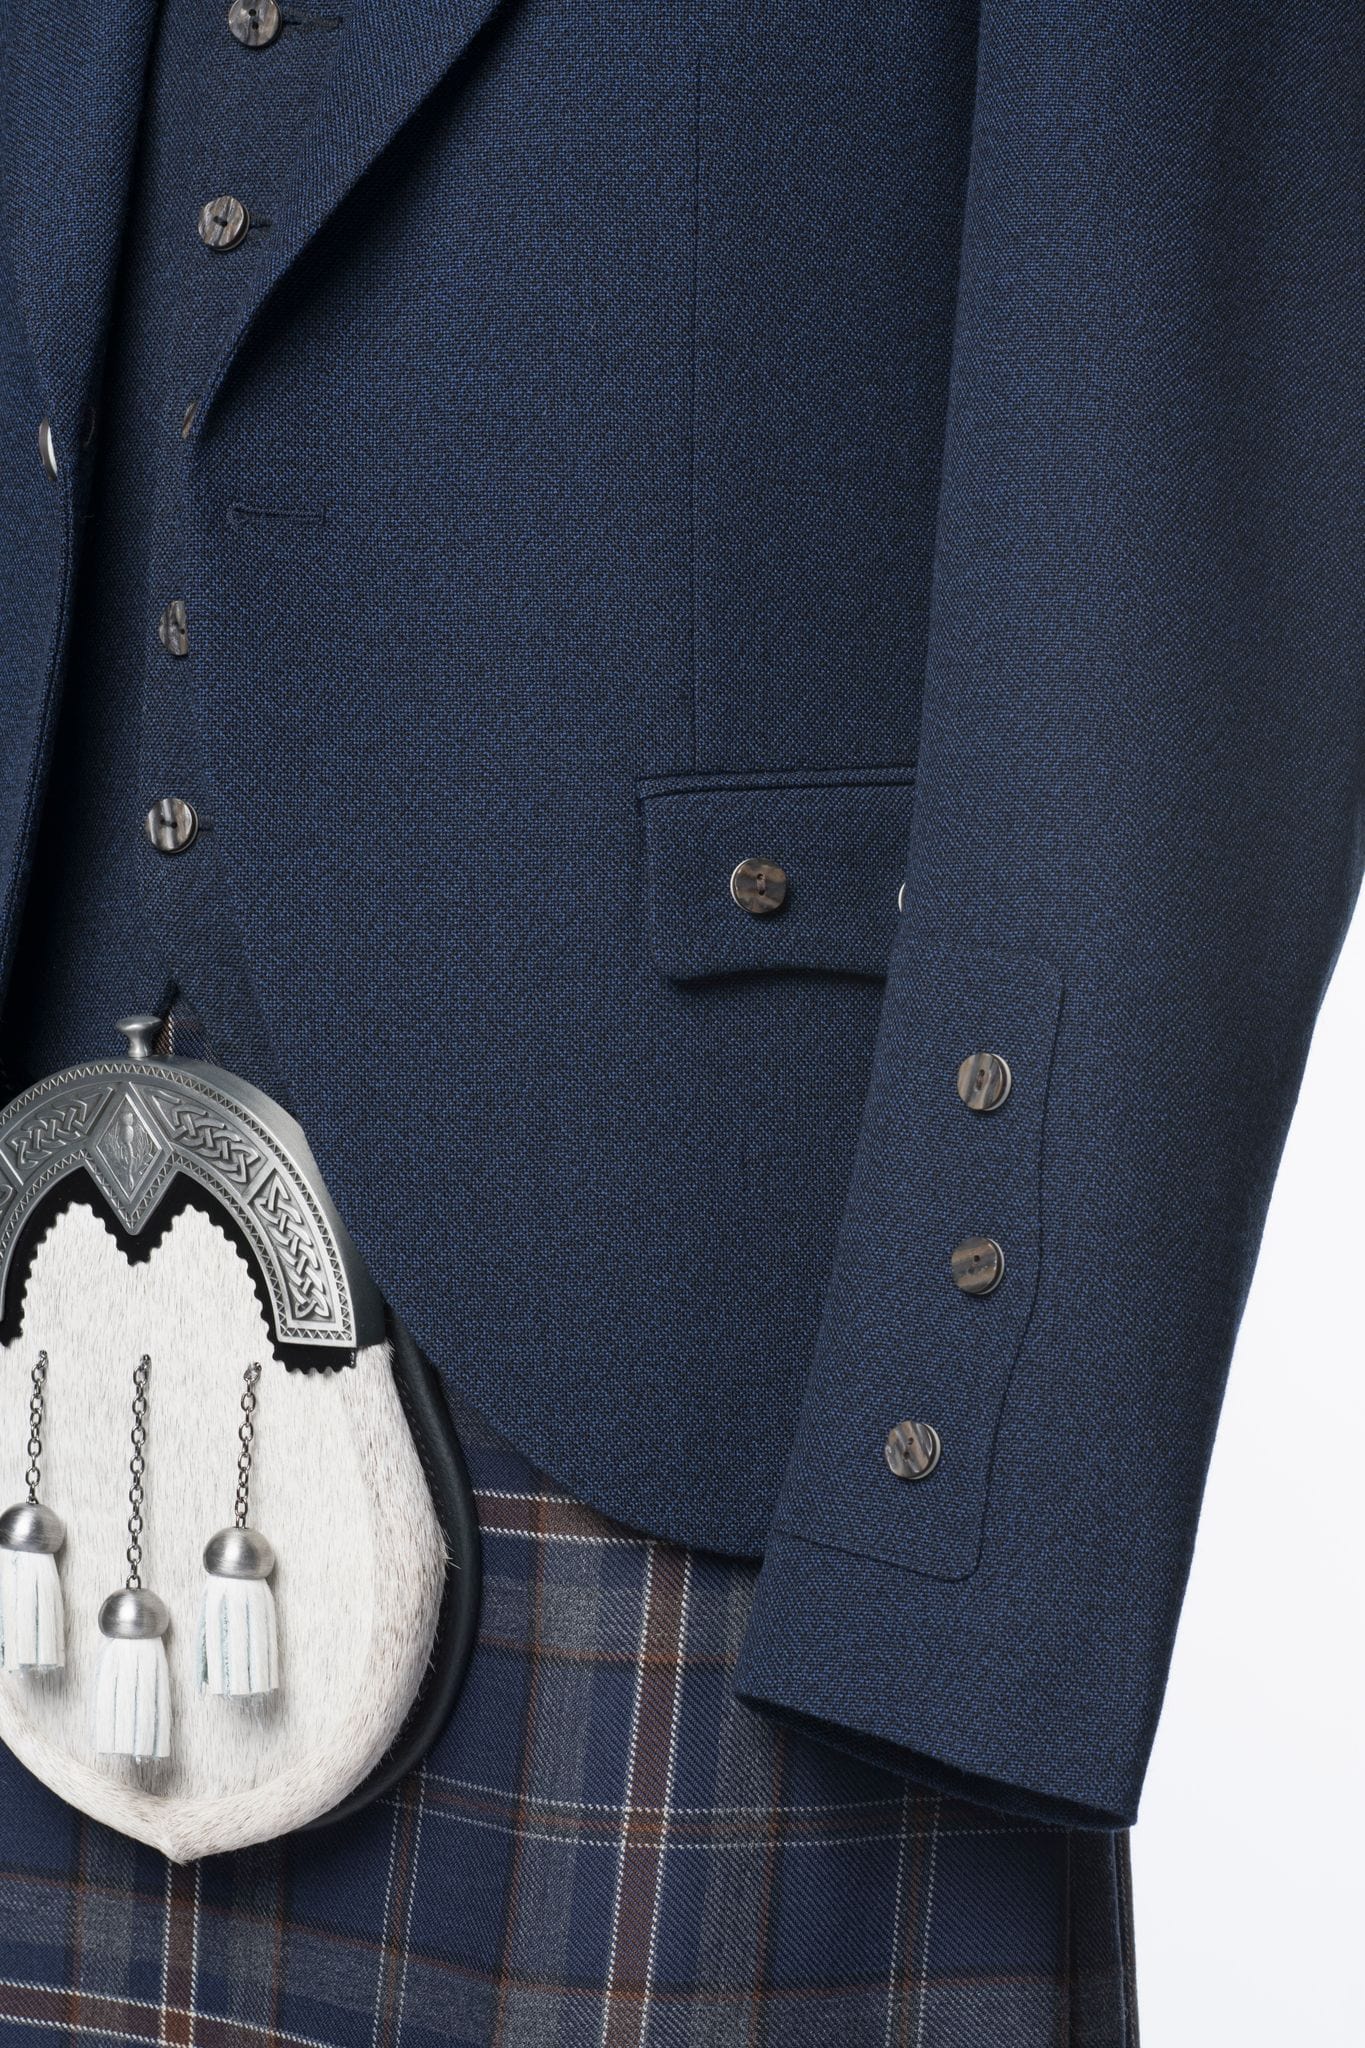 Arran Navy Tweed Kilt Jacket and Waistcoat - MacGregor and MacDuff